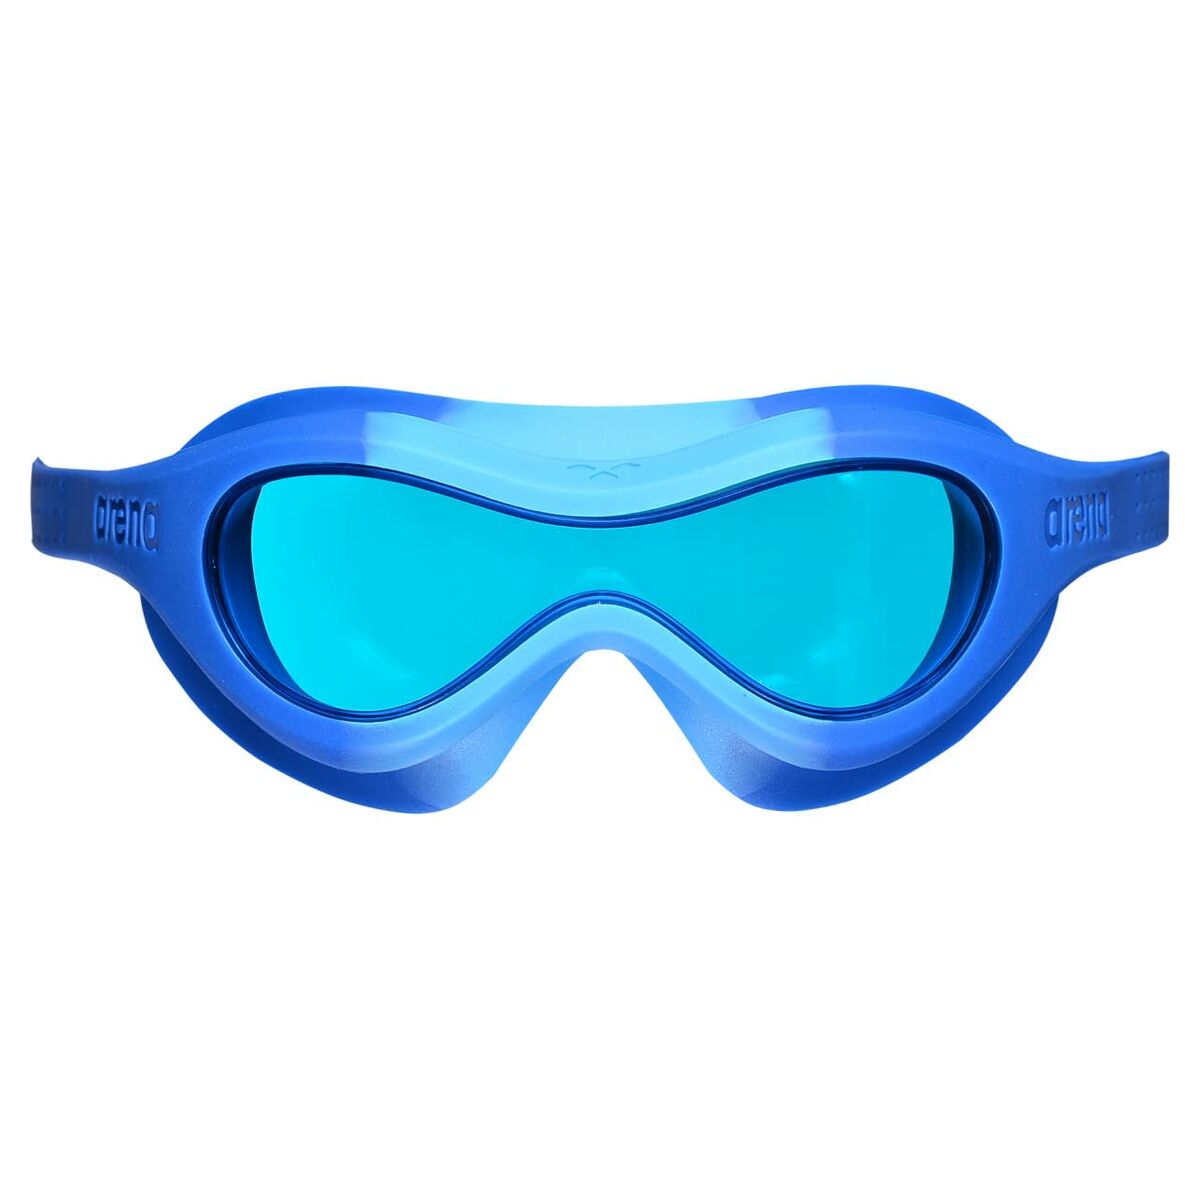 Occhialini da Nuoto per Bambini Arena Spider Kids Mask Azzurro